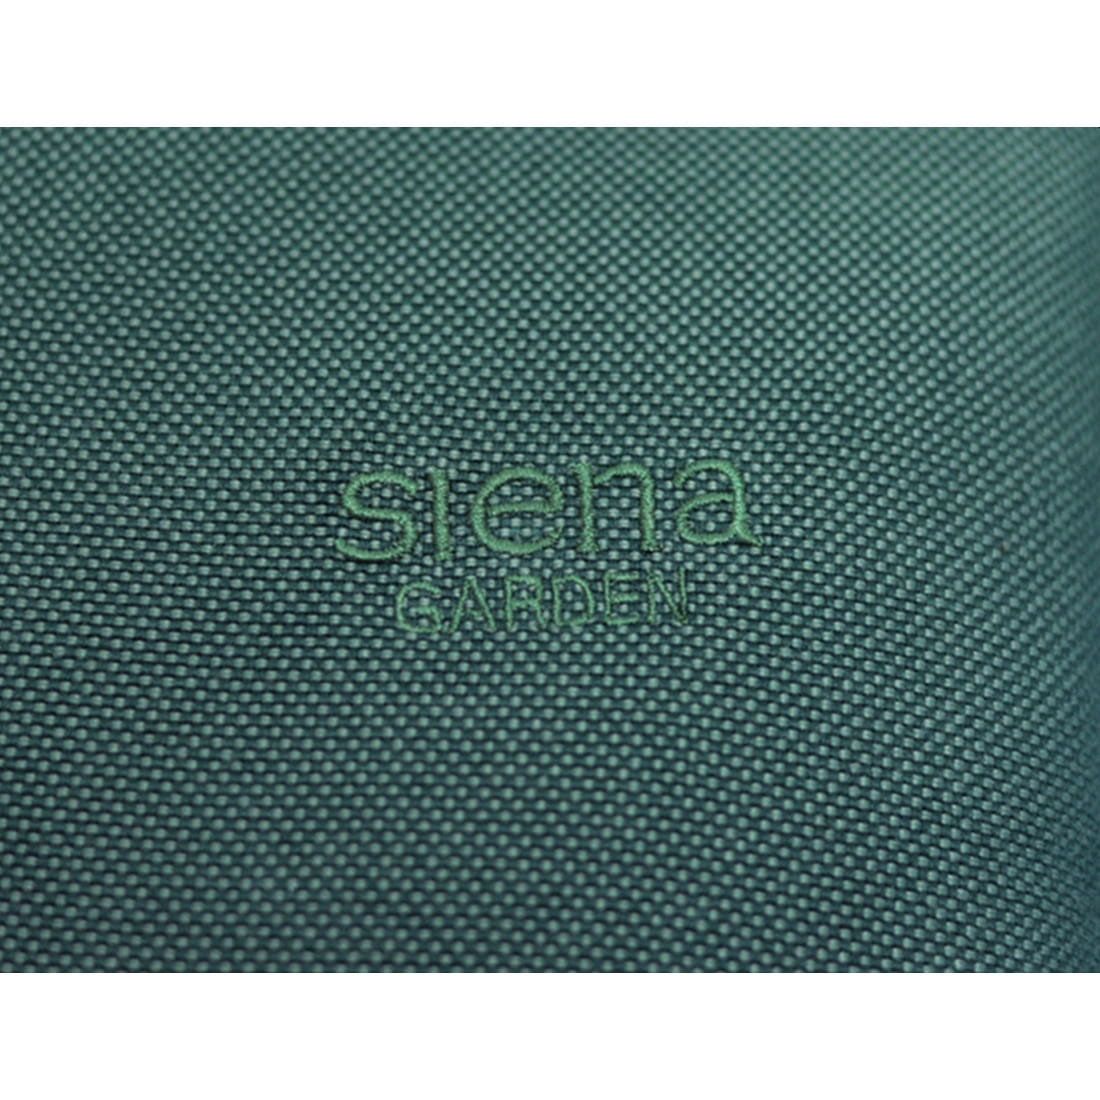 Siena Garden Musica Standardauflage 200x58x3cm Olefin